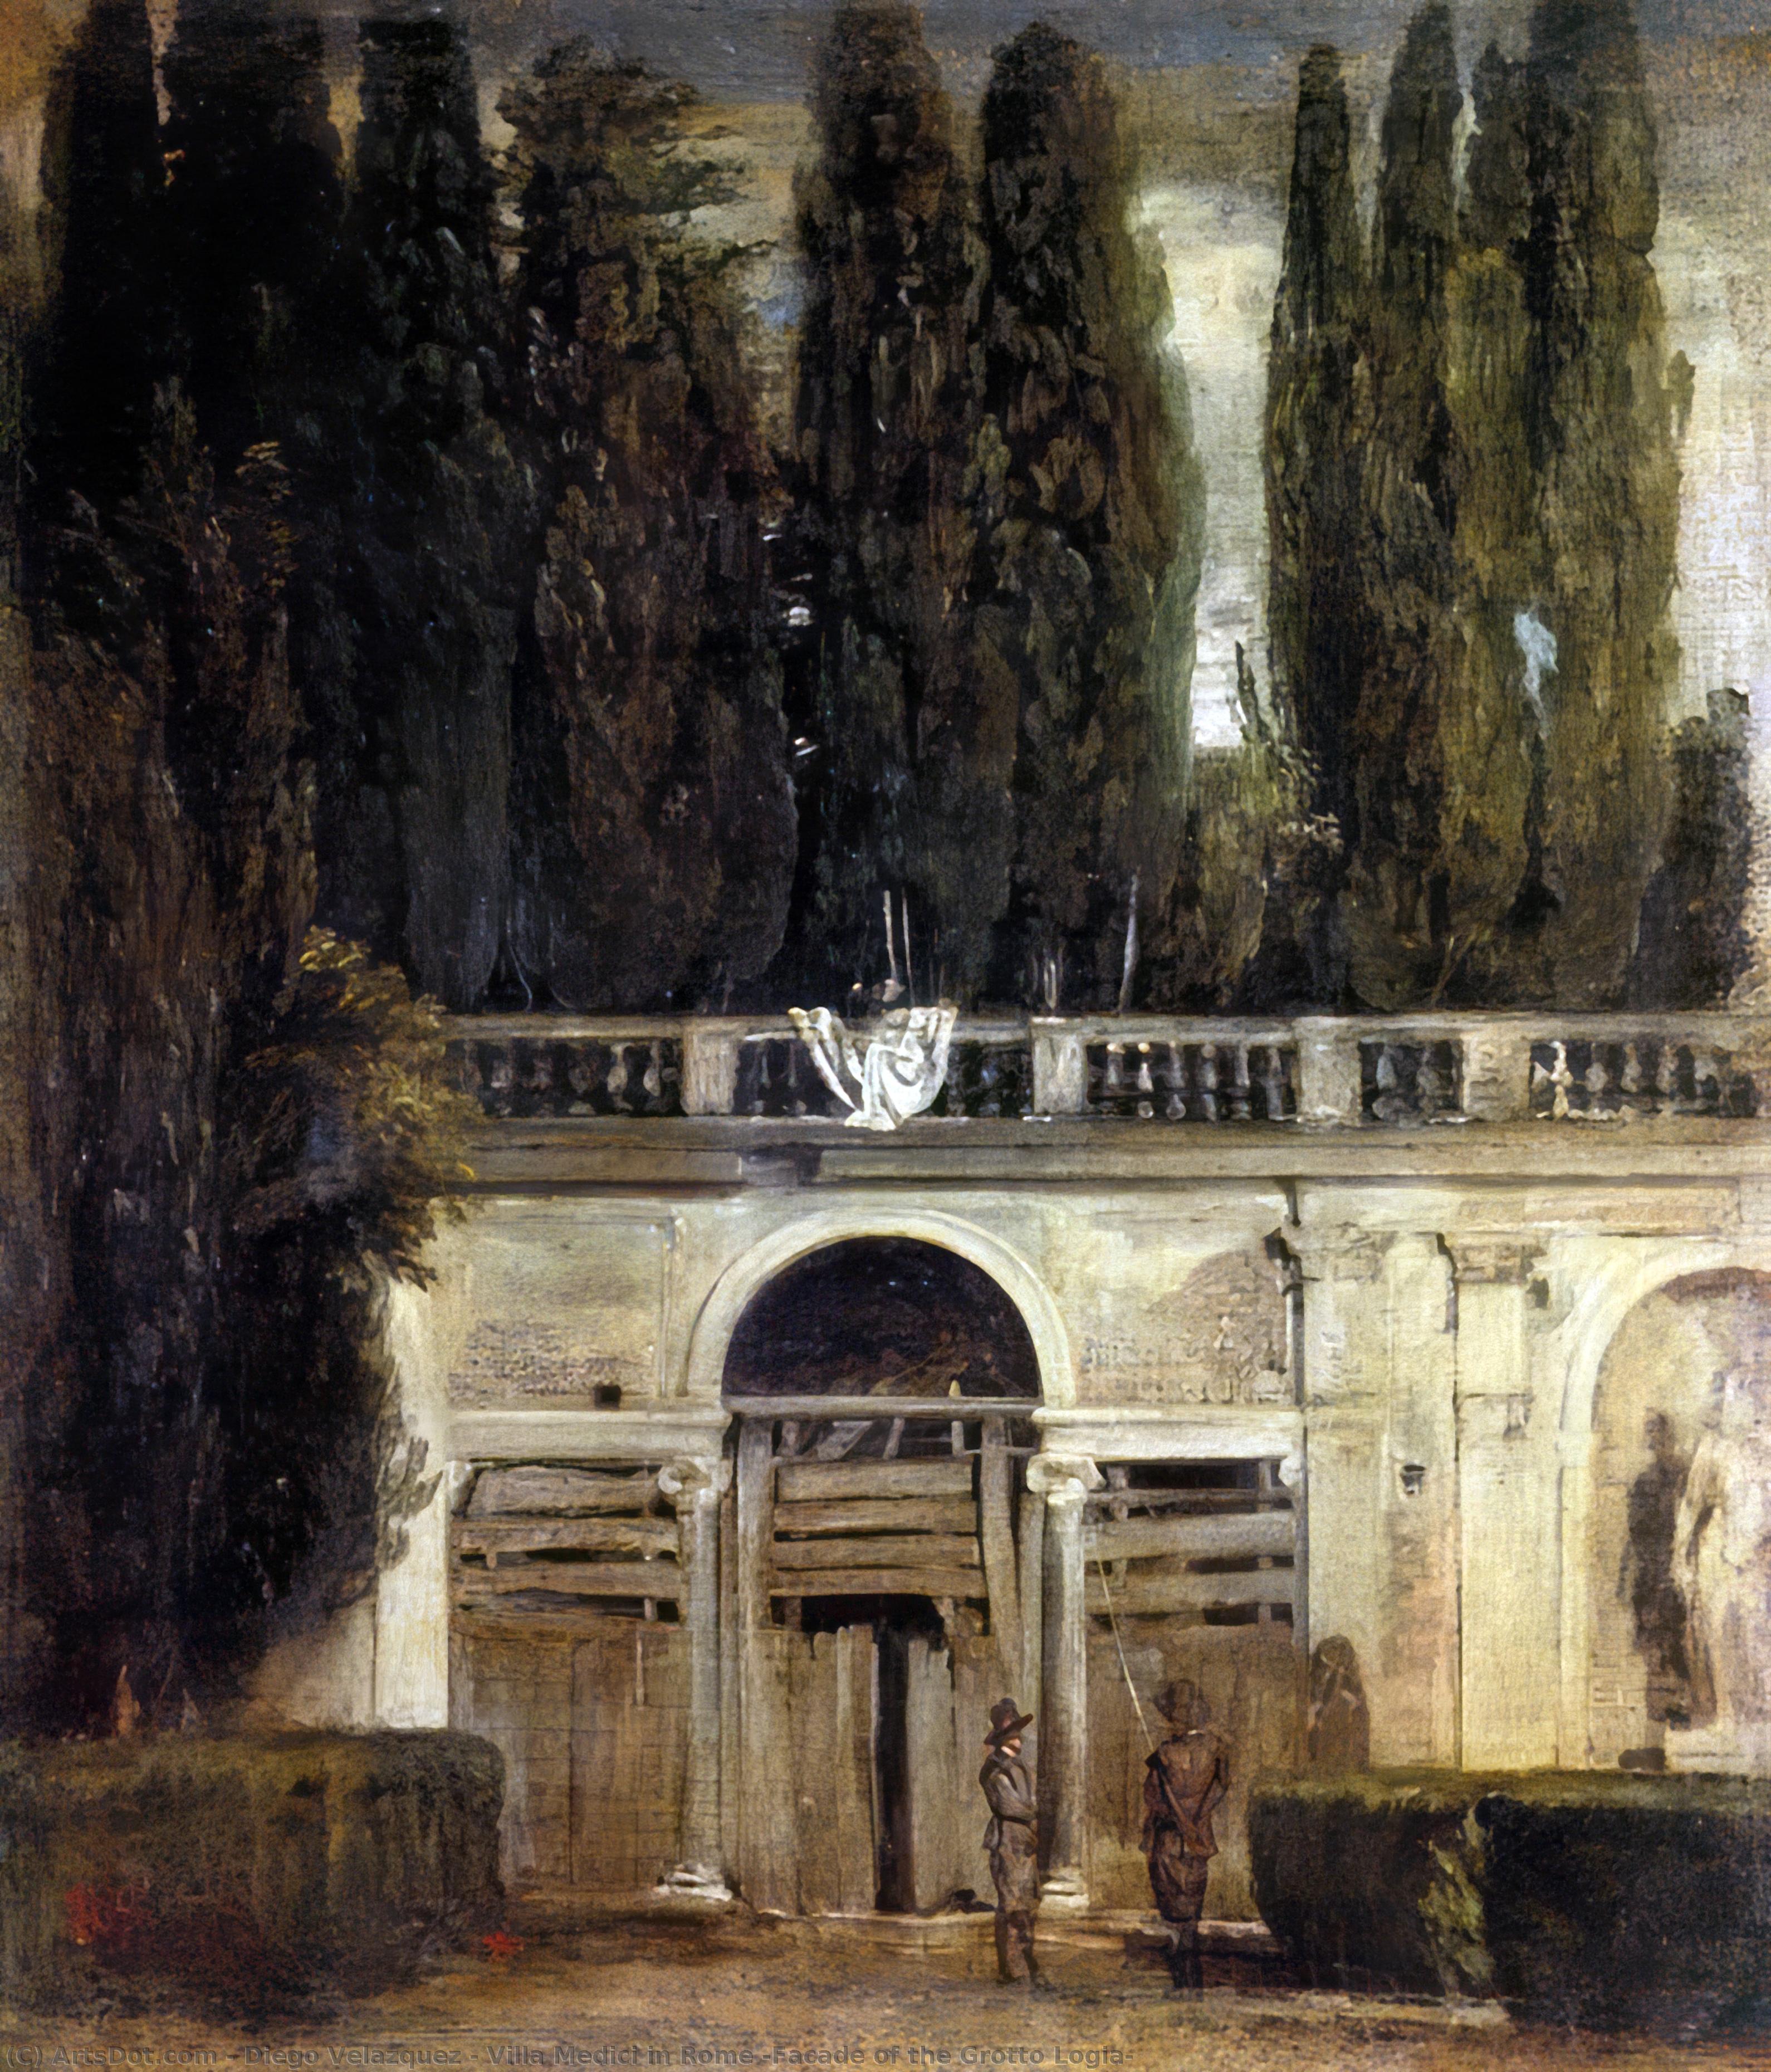 WikiOO.org - Enciklopedija dailės - Tapyba, meno kuriniai Diego Velazquez - Villa Medici in Rome (Facade of the Grotto Logia)